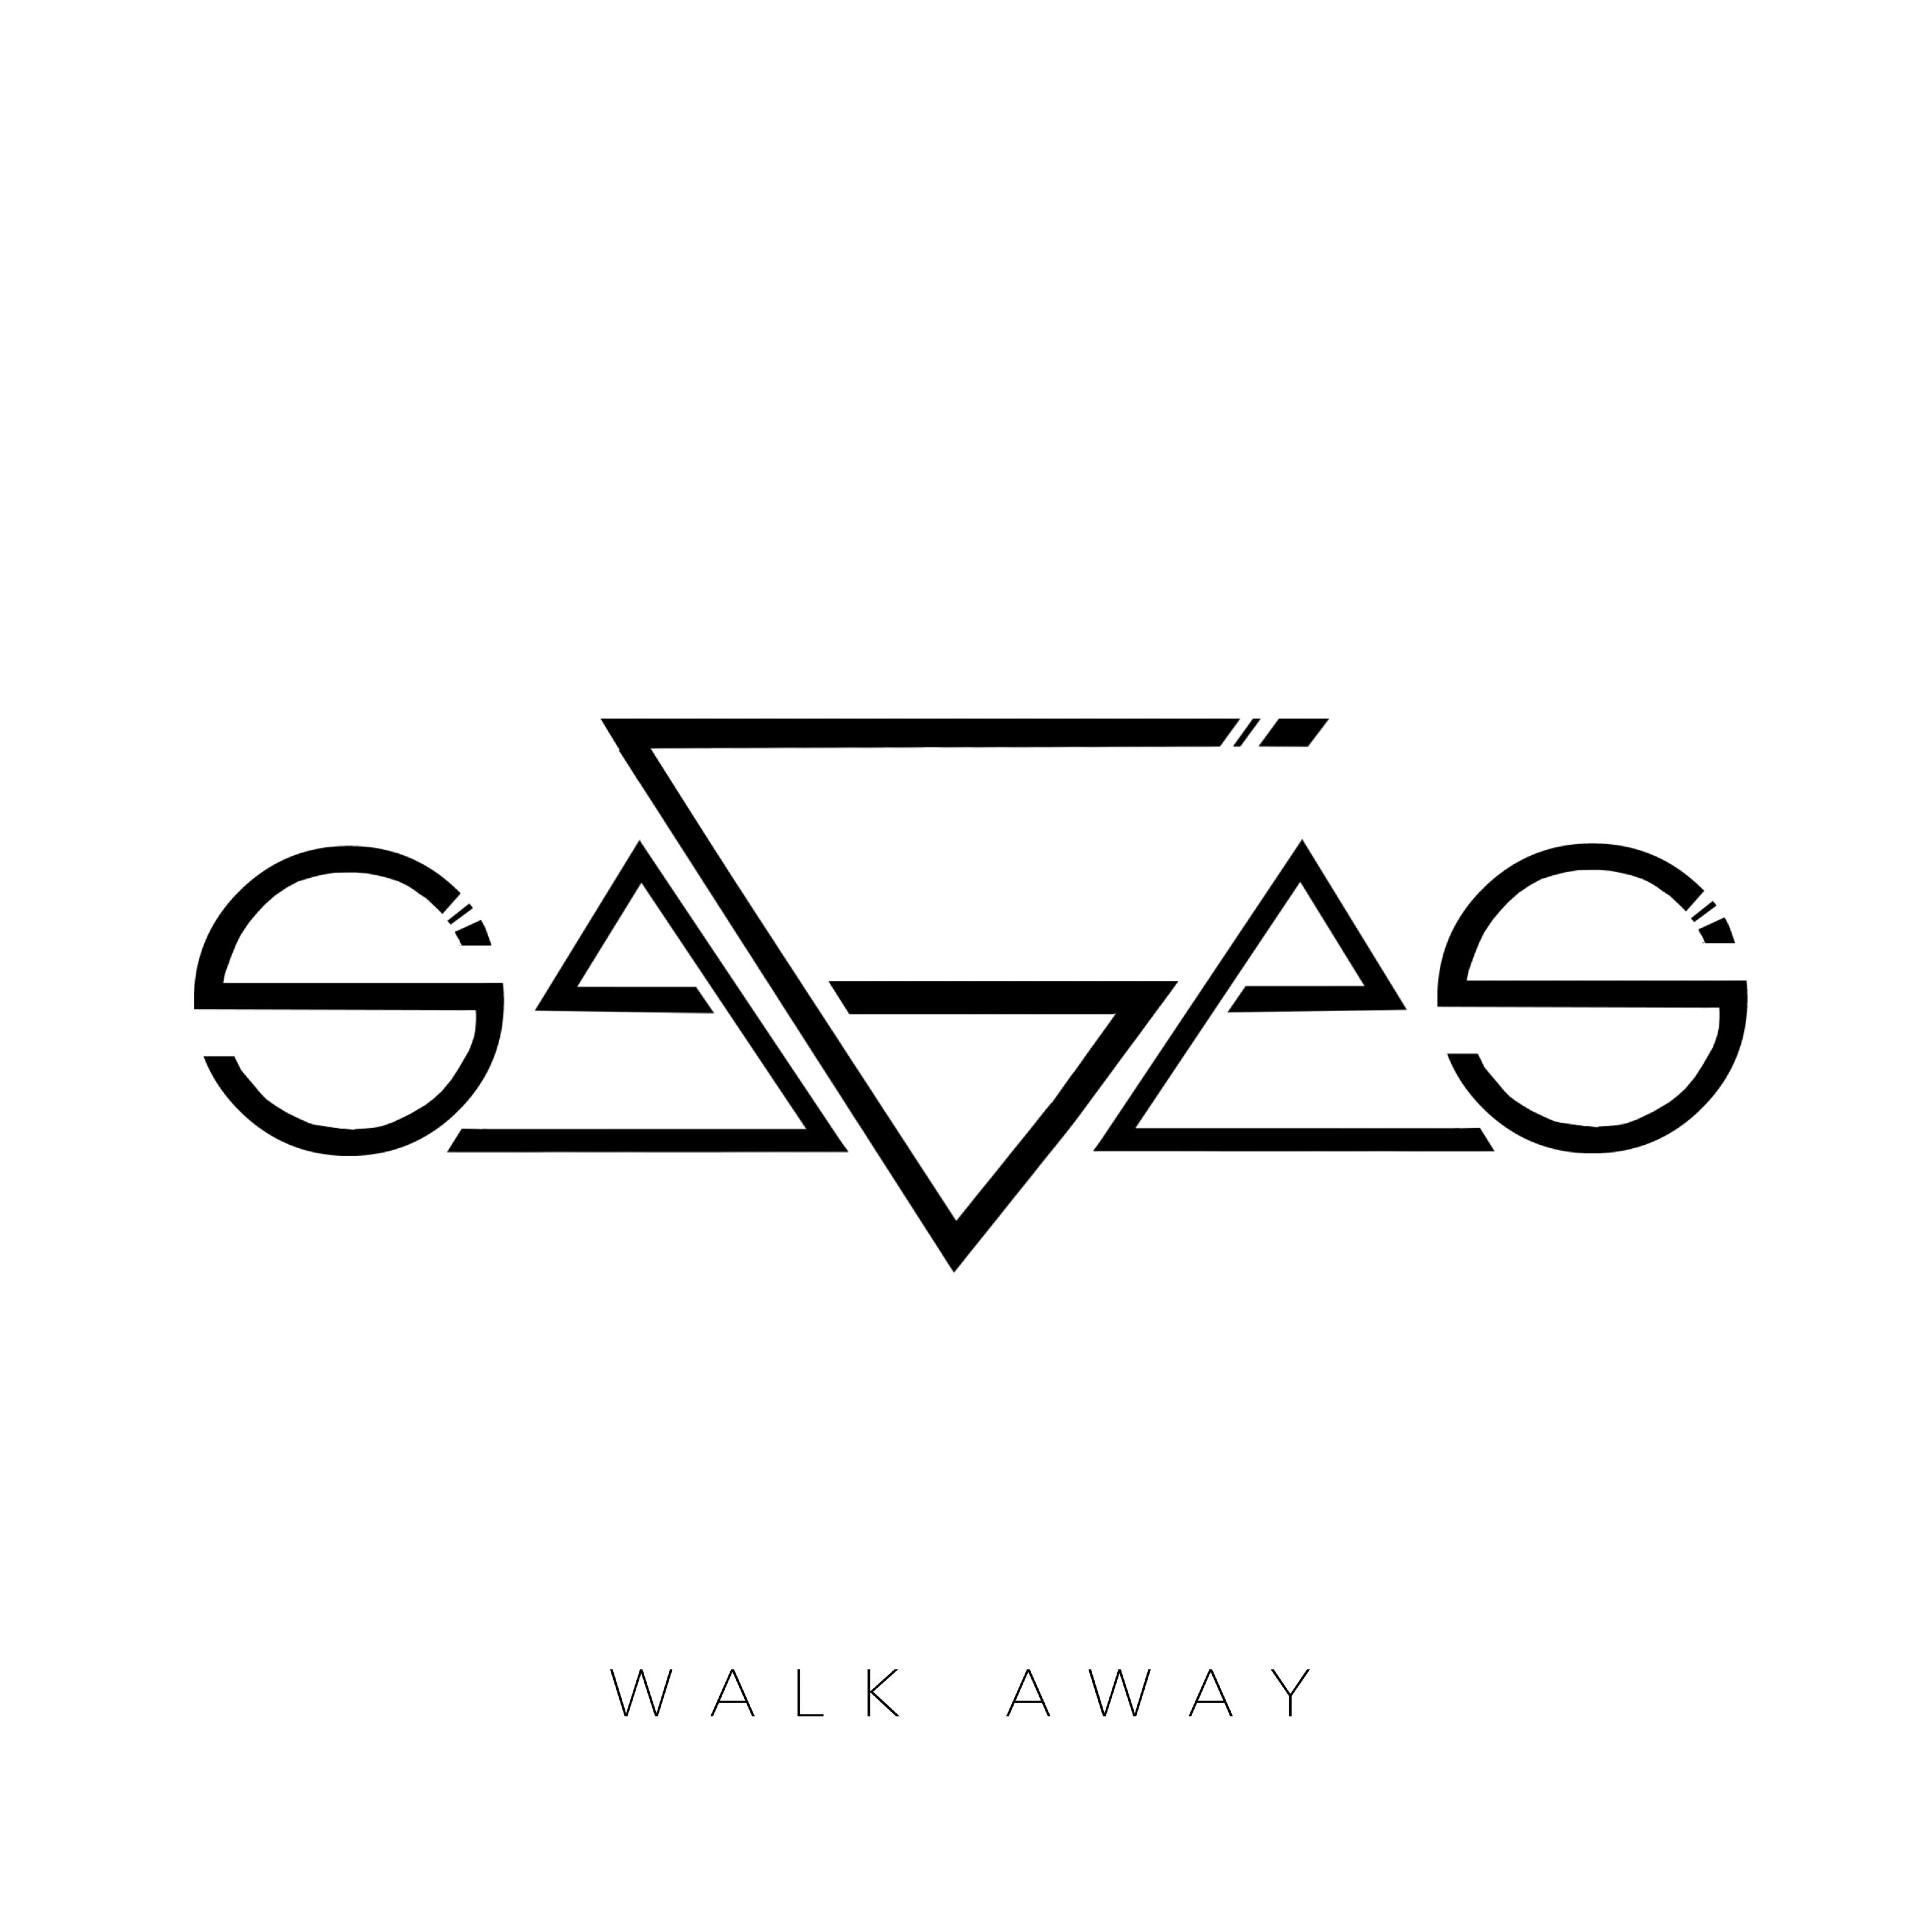 Sages “Walk Away” single artwork